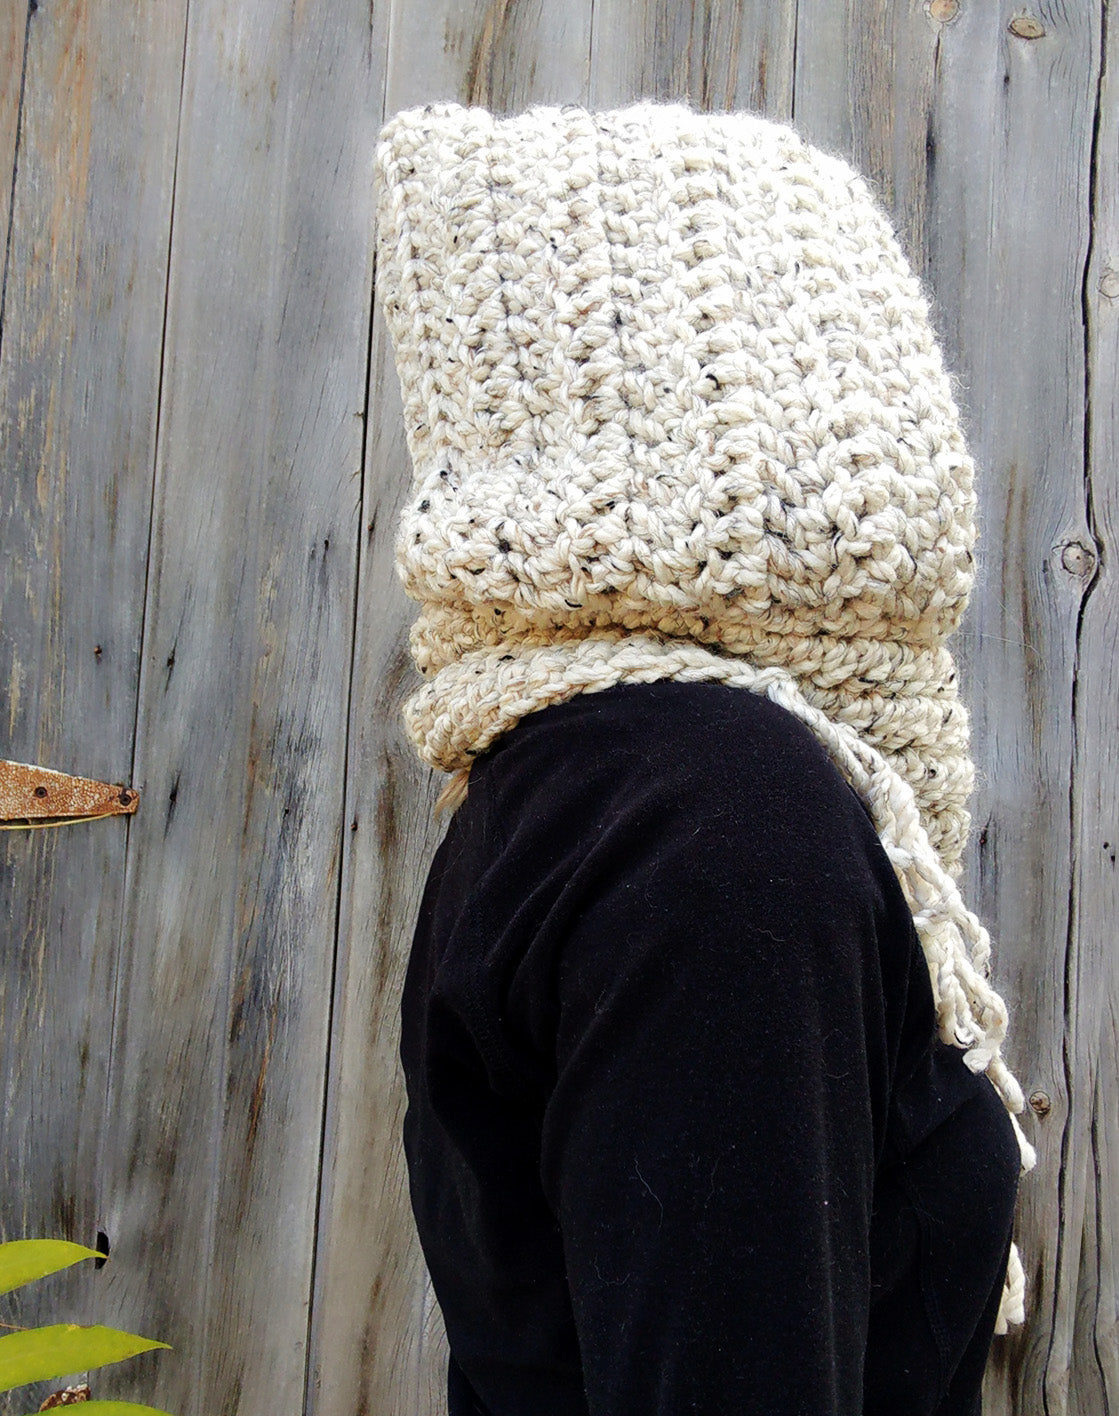 Crochet Pattern: Cozy Hooded Cowl